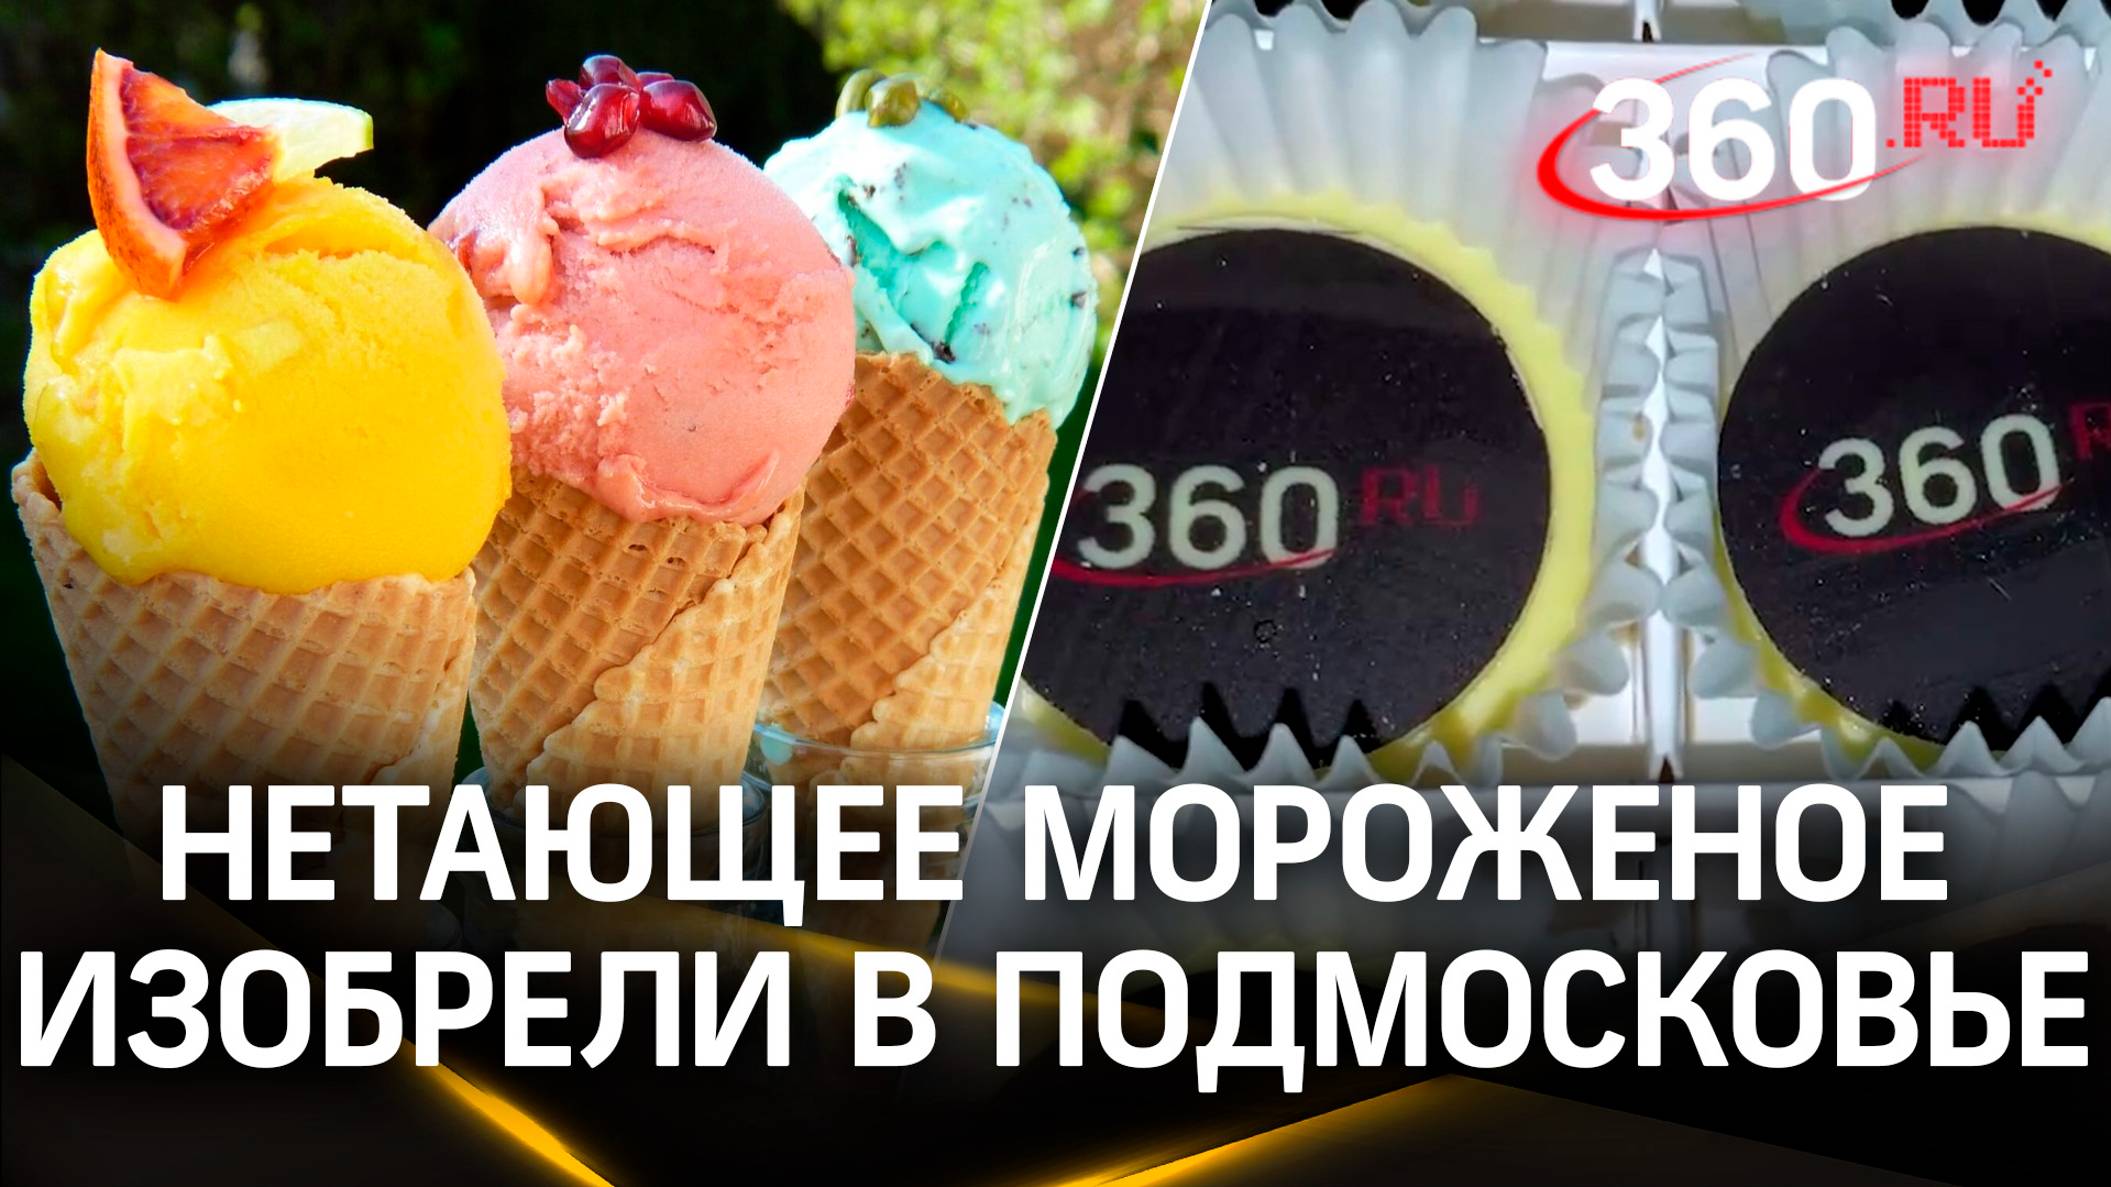 Подмосковные кондитеры изобрели нетающее мороженое. Его сублимируют в специальной печи